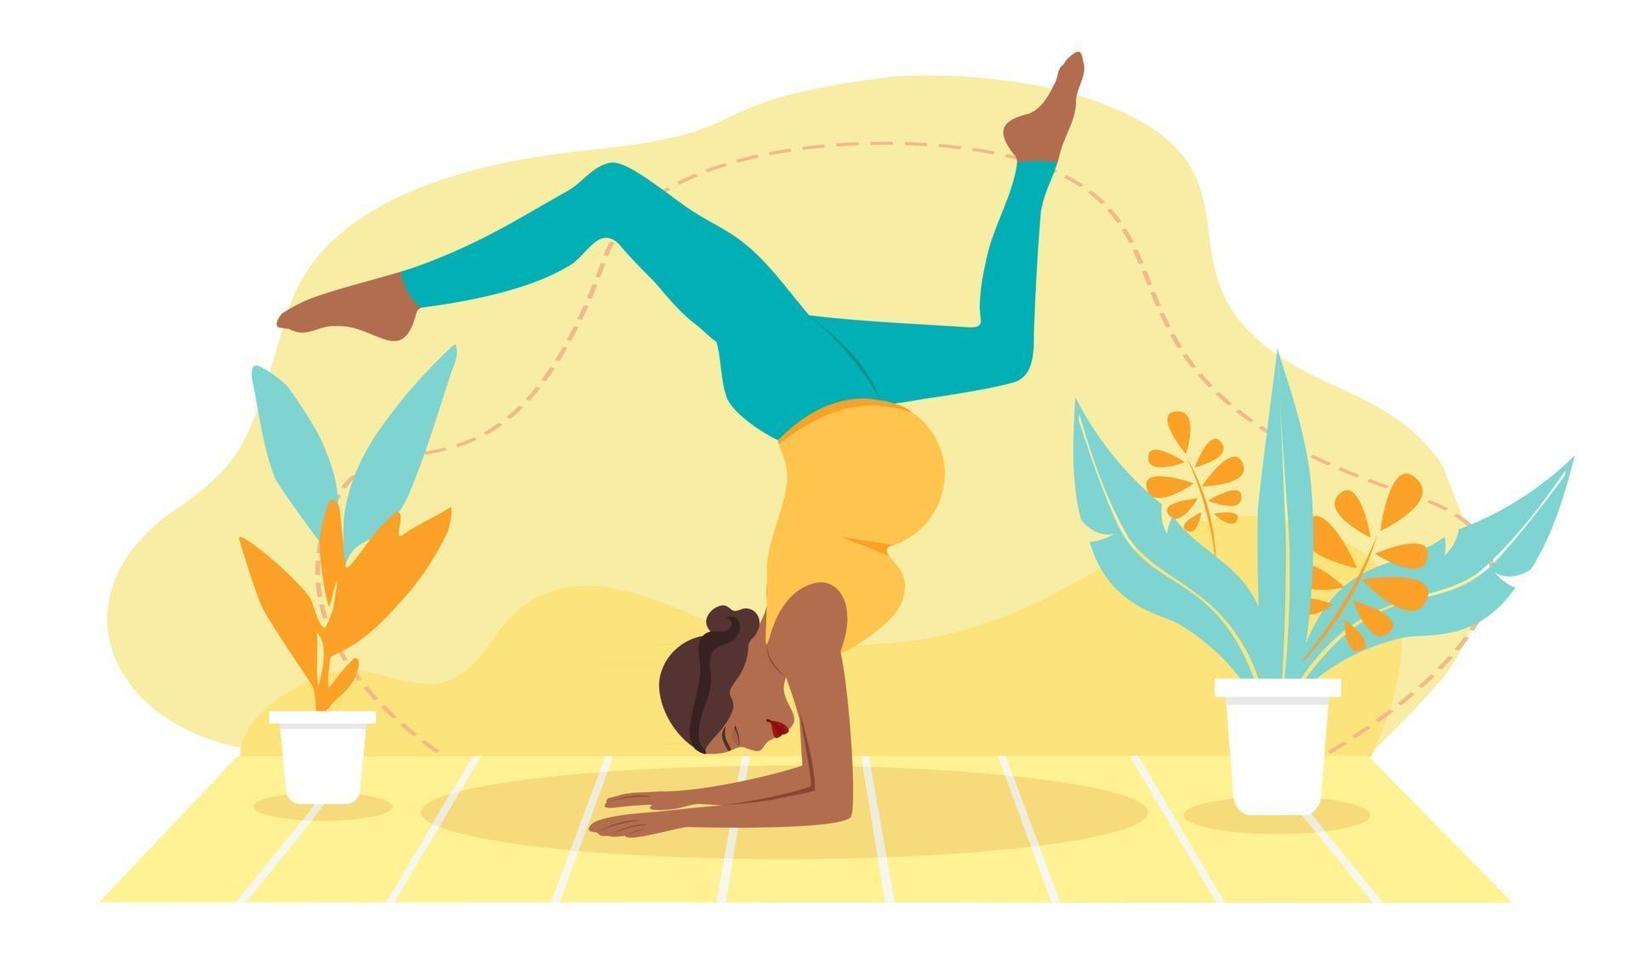 donna incinta dalla pelle scura che medita a casa. illustrazione del concetto di yoga prenatale, meditazione, relax, ricreazione, stile di vita sano. illustrazione in stile cartone animato piatto. vettore